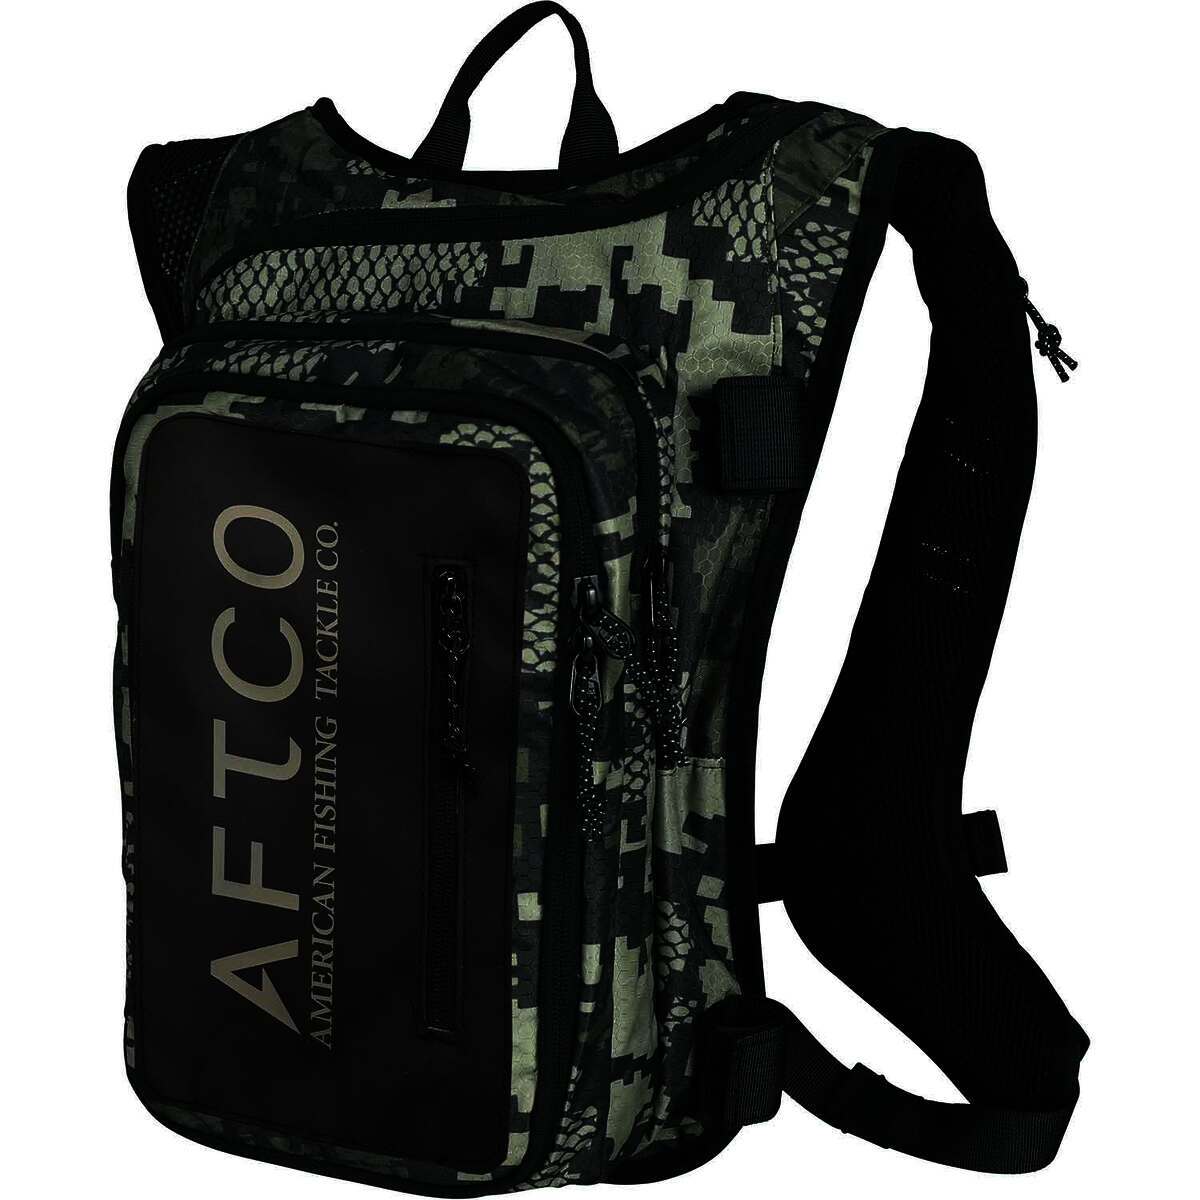 https://www.sportsmans.com/medias/aftco-urban-angler-tackle-backpack-green-digi-camo-1750740-1.jpg?context=bWFzdGVyfGltYWdlc3w4NjAyMHxpbWFnZS9qcGVnfGg3My9oMmUvMTA2MjMwMjE2NDU4NTQvMTc1MDc0MC0xX2Jhc2UtY29udmVyc2lvbkZvcm1hdF8xMjAwLWNvbnZlcnNpb25Gb3JtYXR8M2JiYTQwZmE5ODIxZDMwZDU2YWVhZmY1NTBjZWQ3NTI5YjI1NDc5MTUwZDNhZTRmNjdmYTU1YTY3ODc5ZGQ4MA